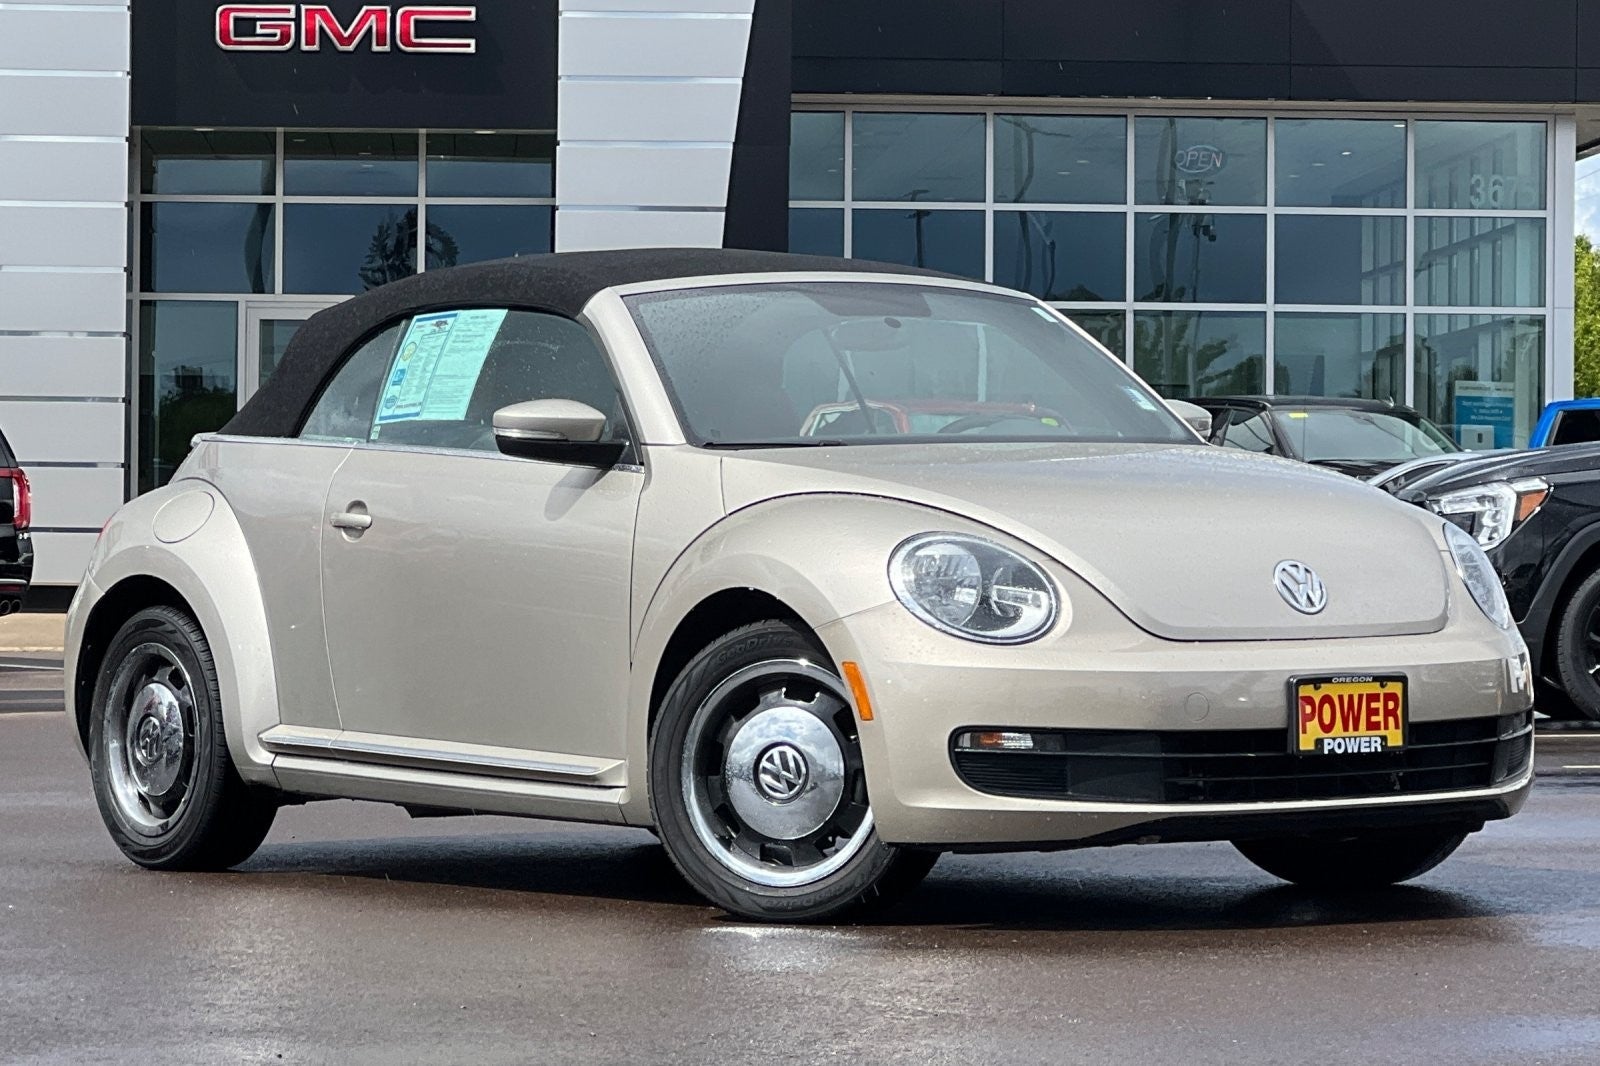 2015 Volkswagen Beetle Convertible 1.8T